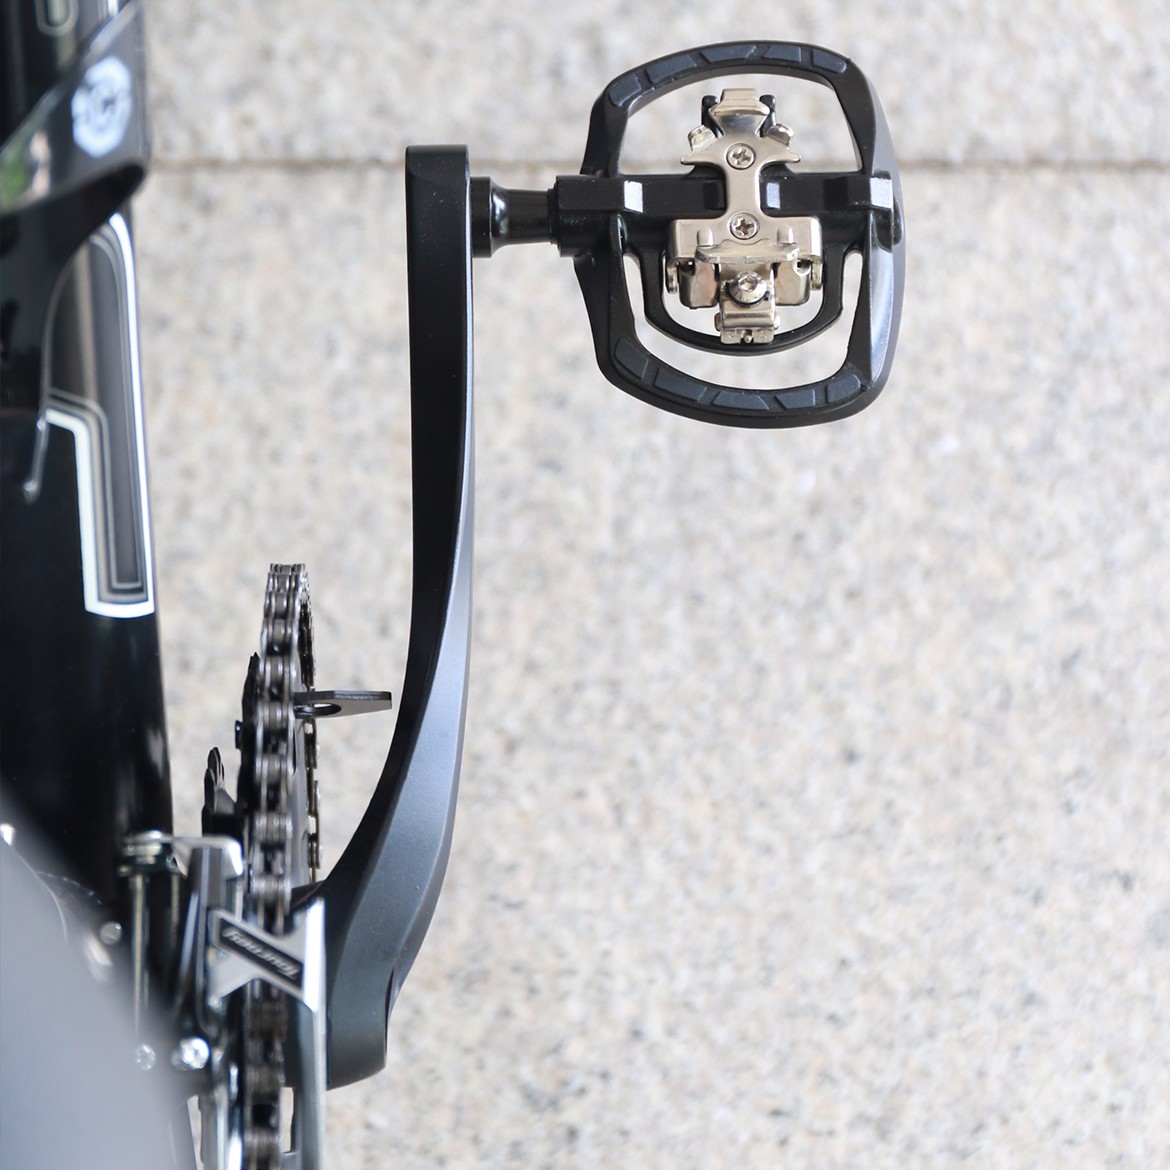 Bàn đạp đa dụng gồm 1 mặt phẳng & 1 mặt kèm can/cá Jett Commuter clipless pedal